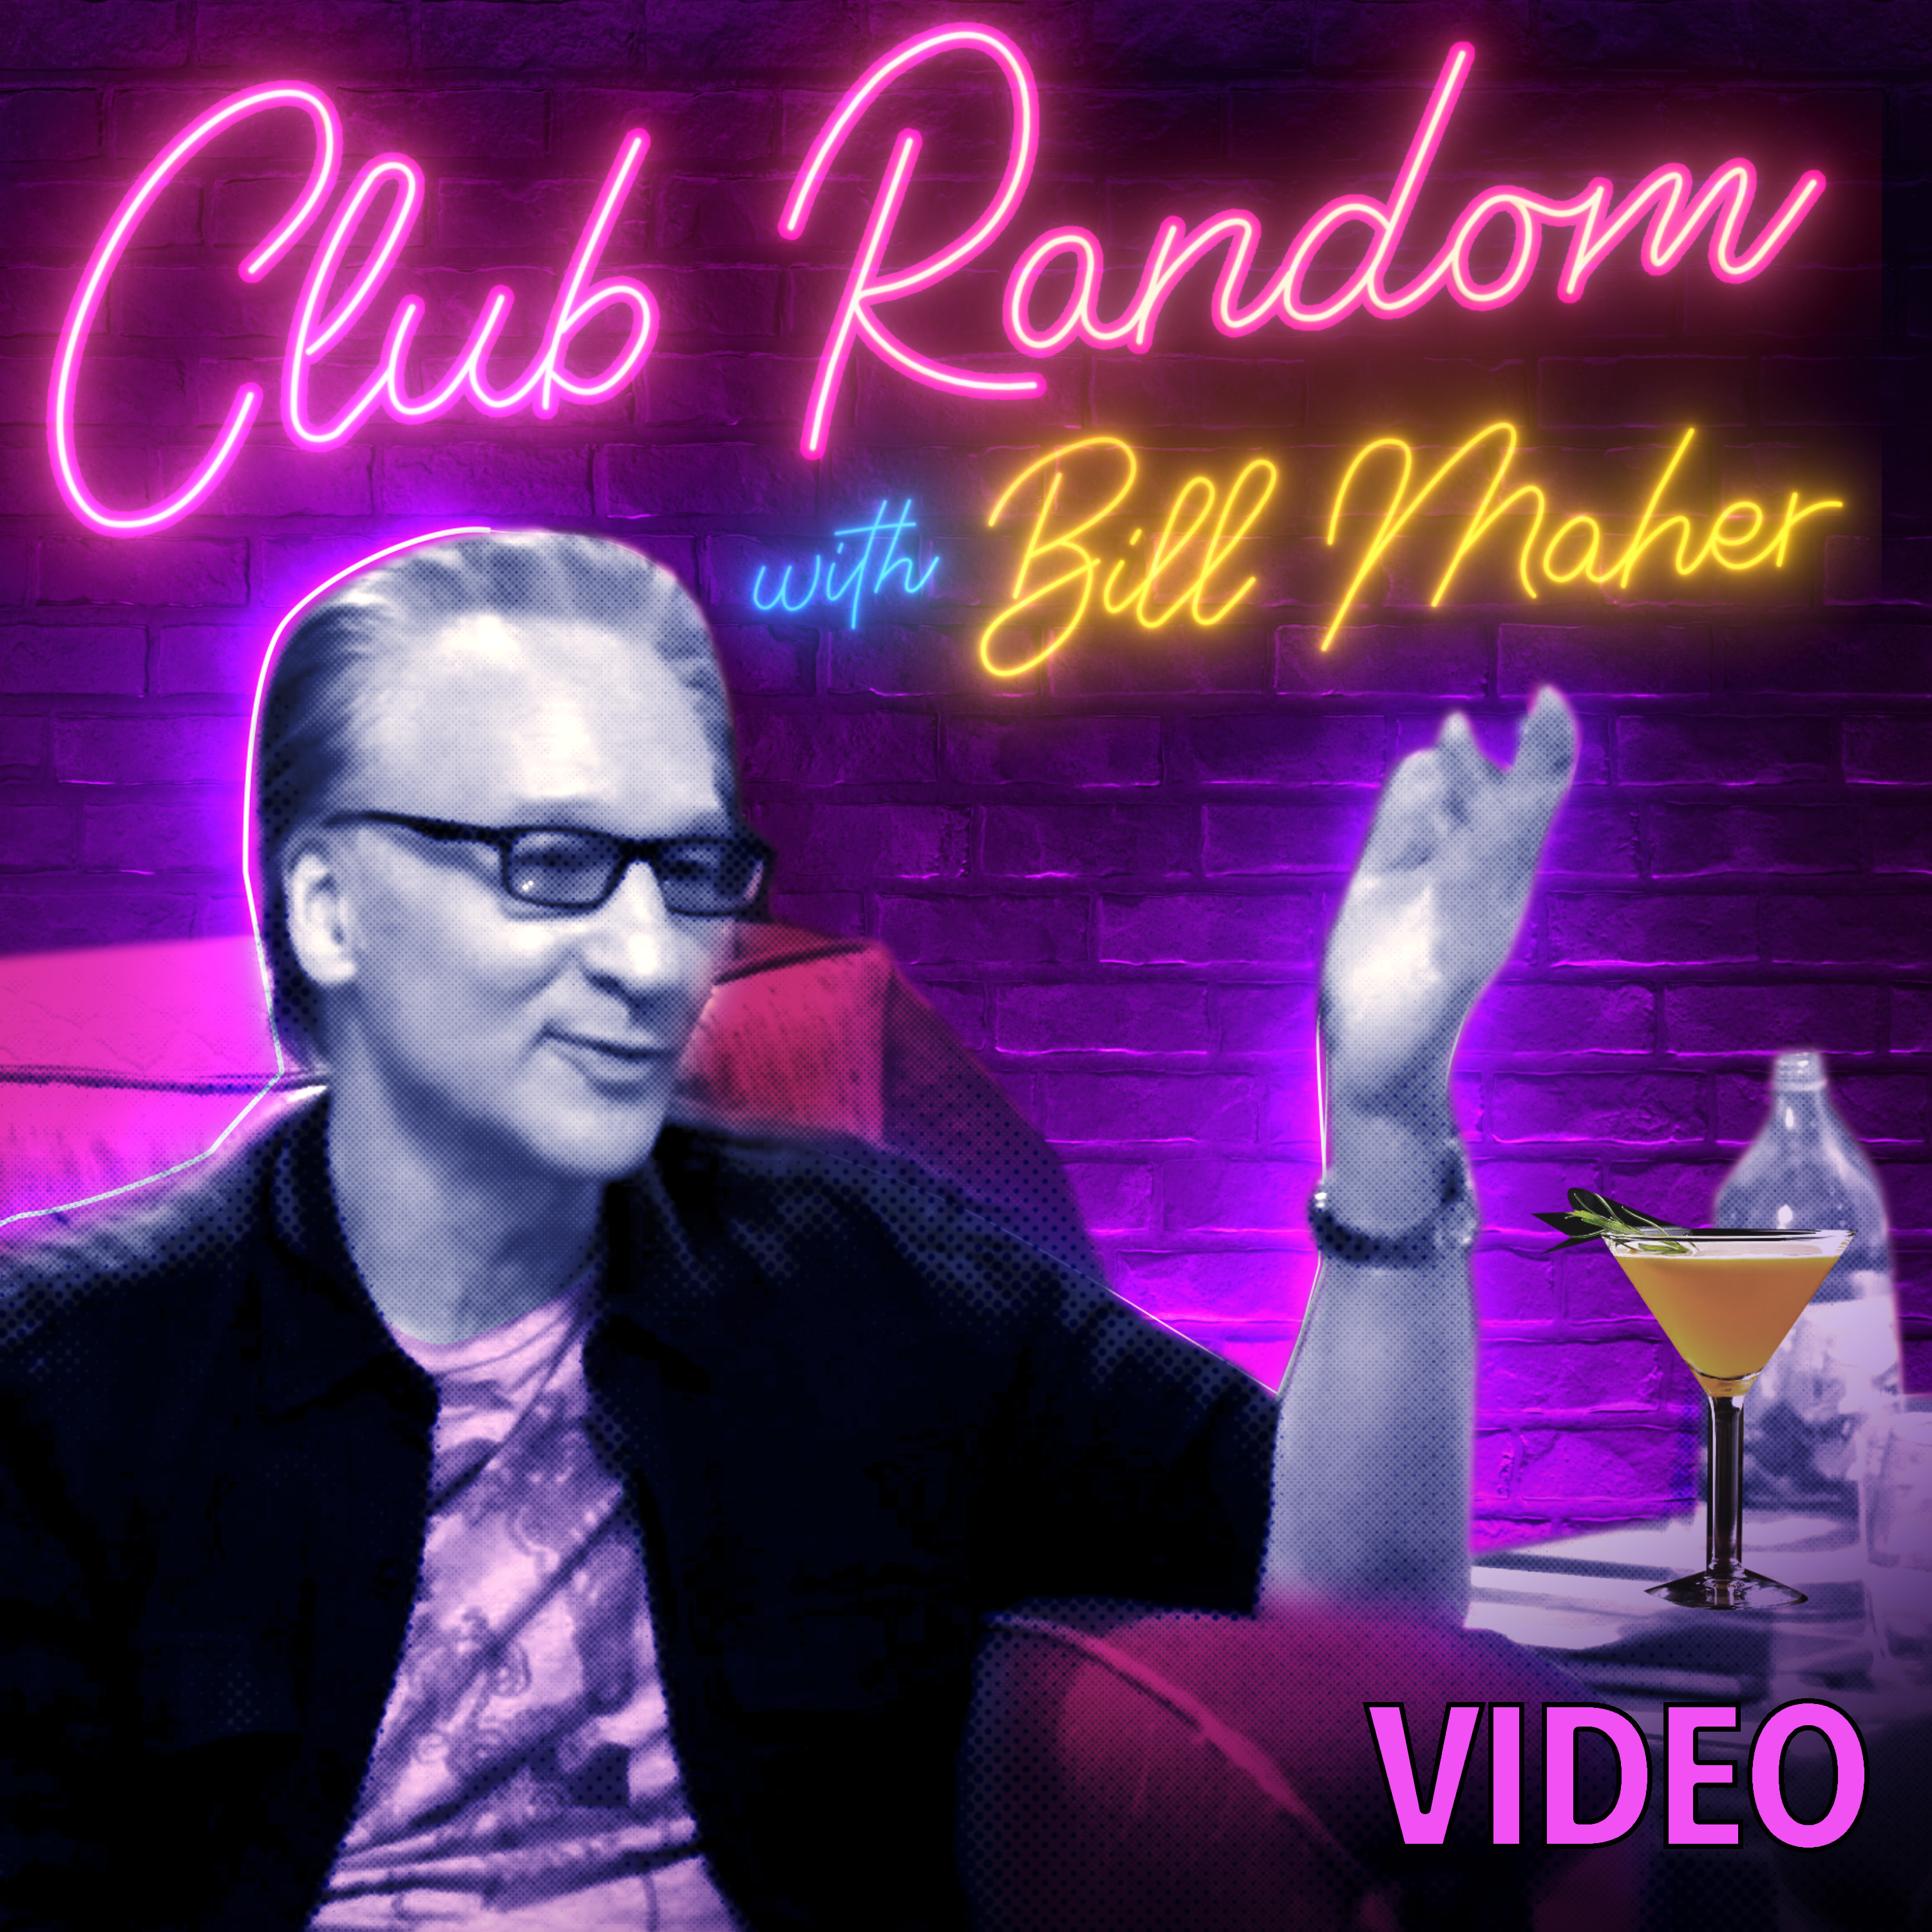 Video: Martin Short | Club Random with Bill Maher